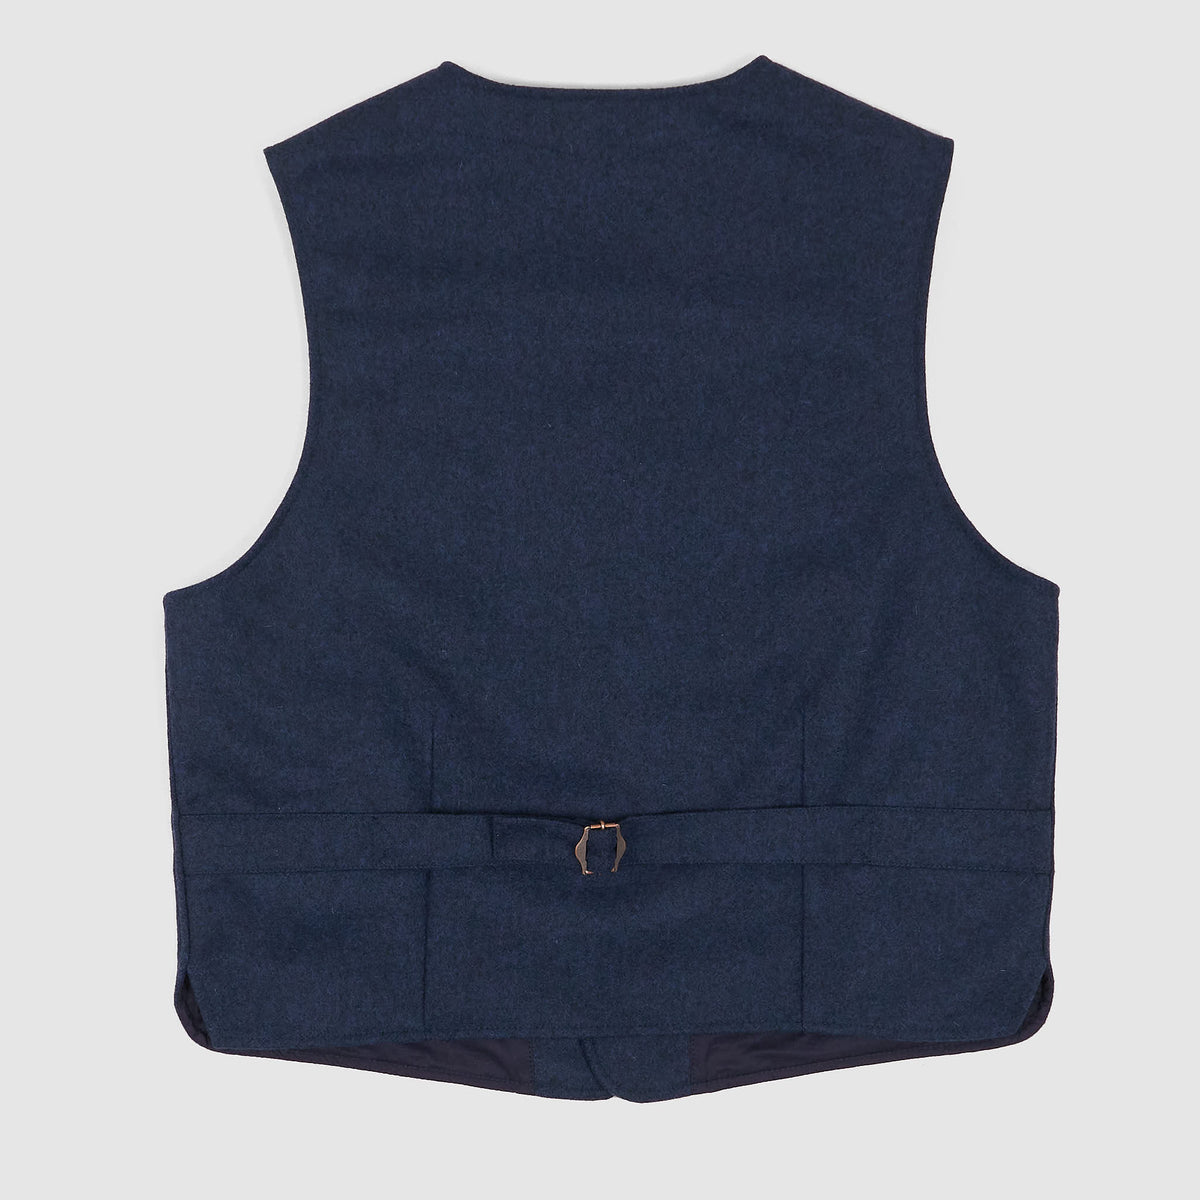 Manifattura Ceccarelli Classic Wool Vest